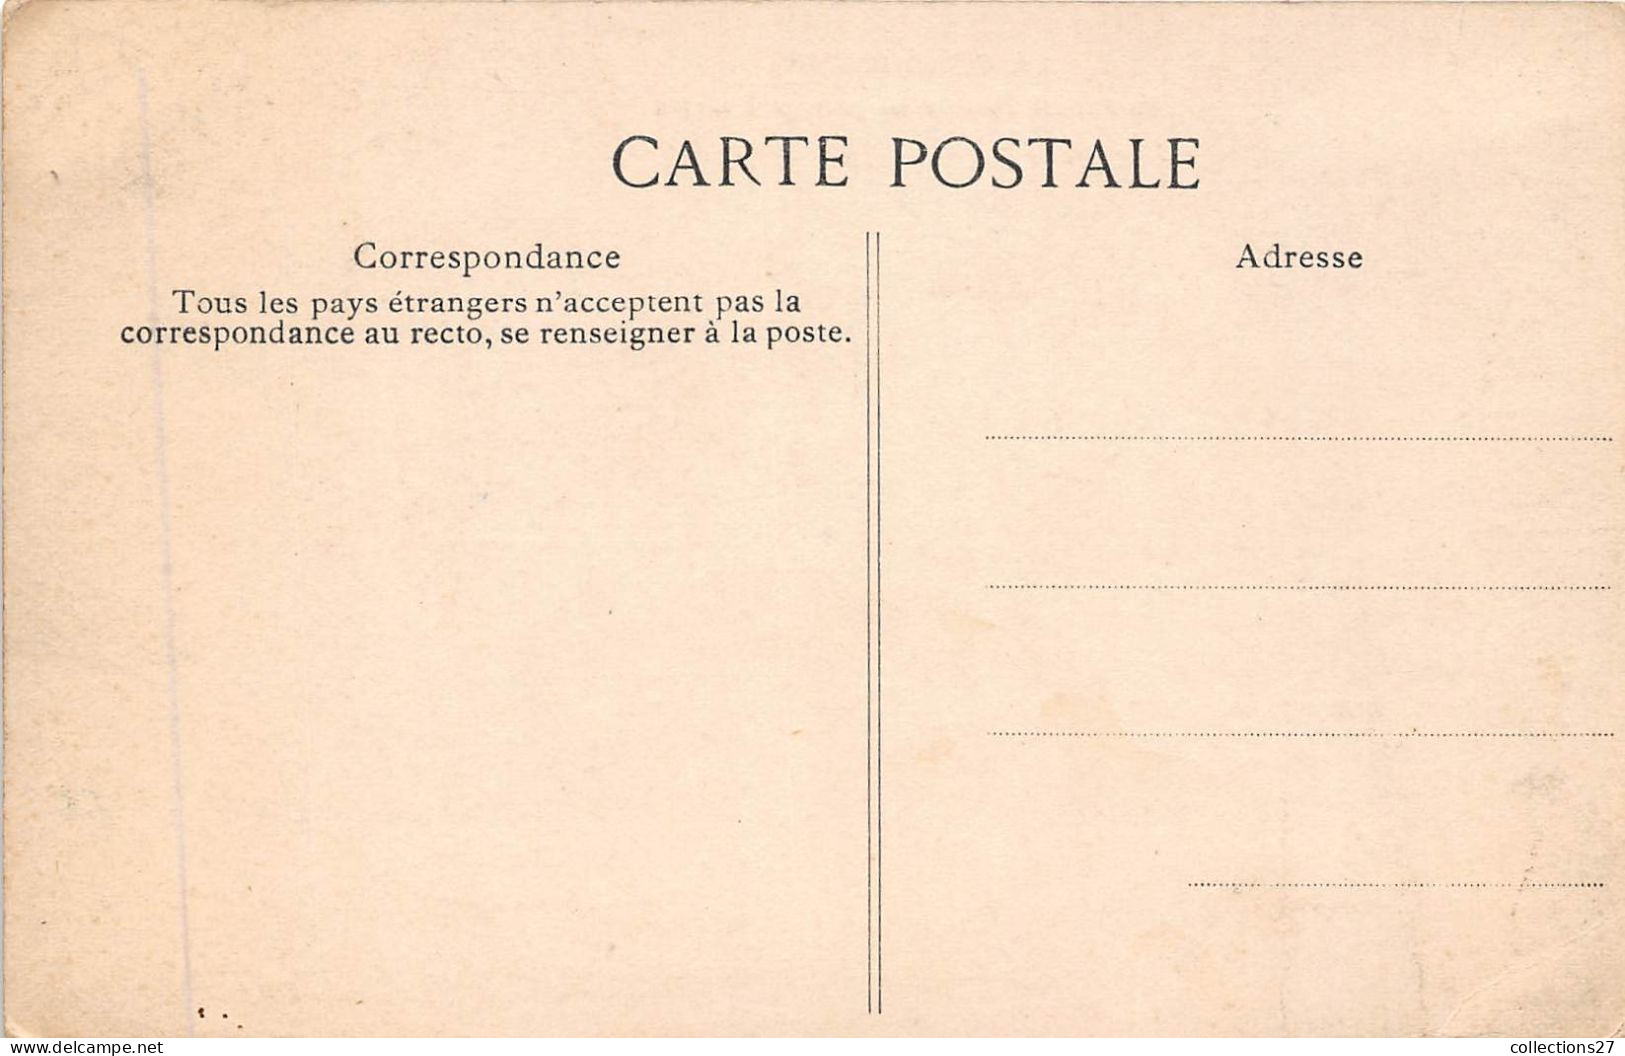 93-LA-COURNEUVE- BOULEVARD PASTEUR AU PASSAGE A NIVEAU - La Courneuve